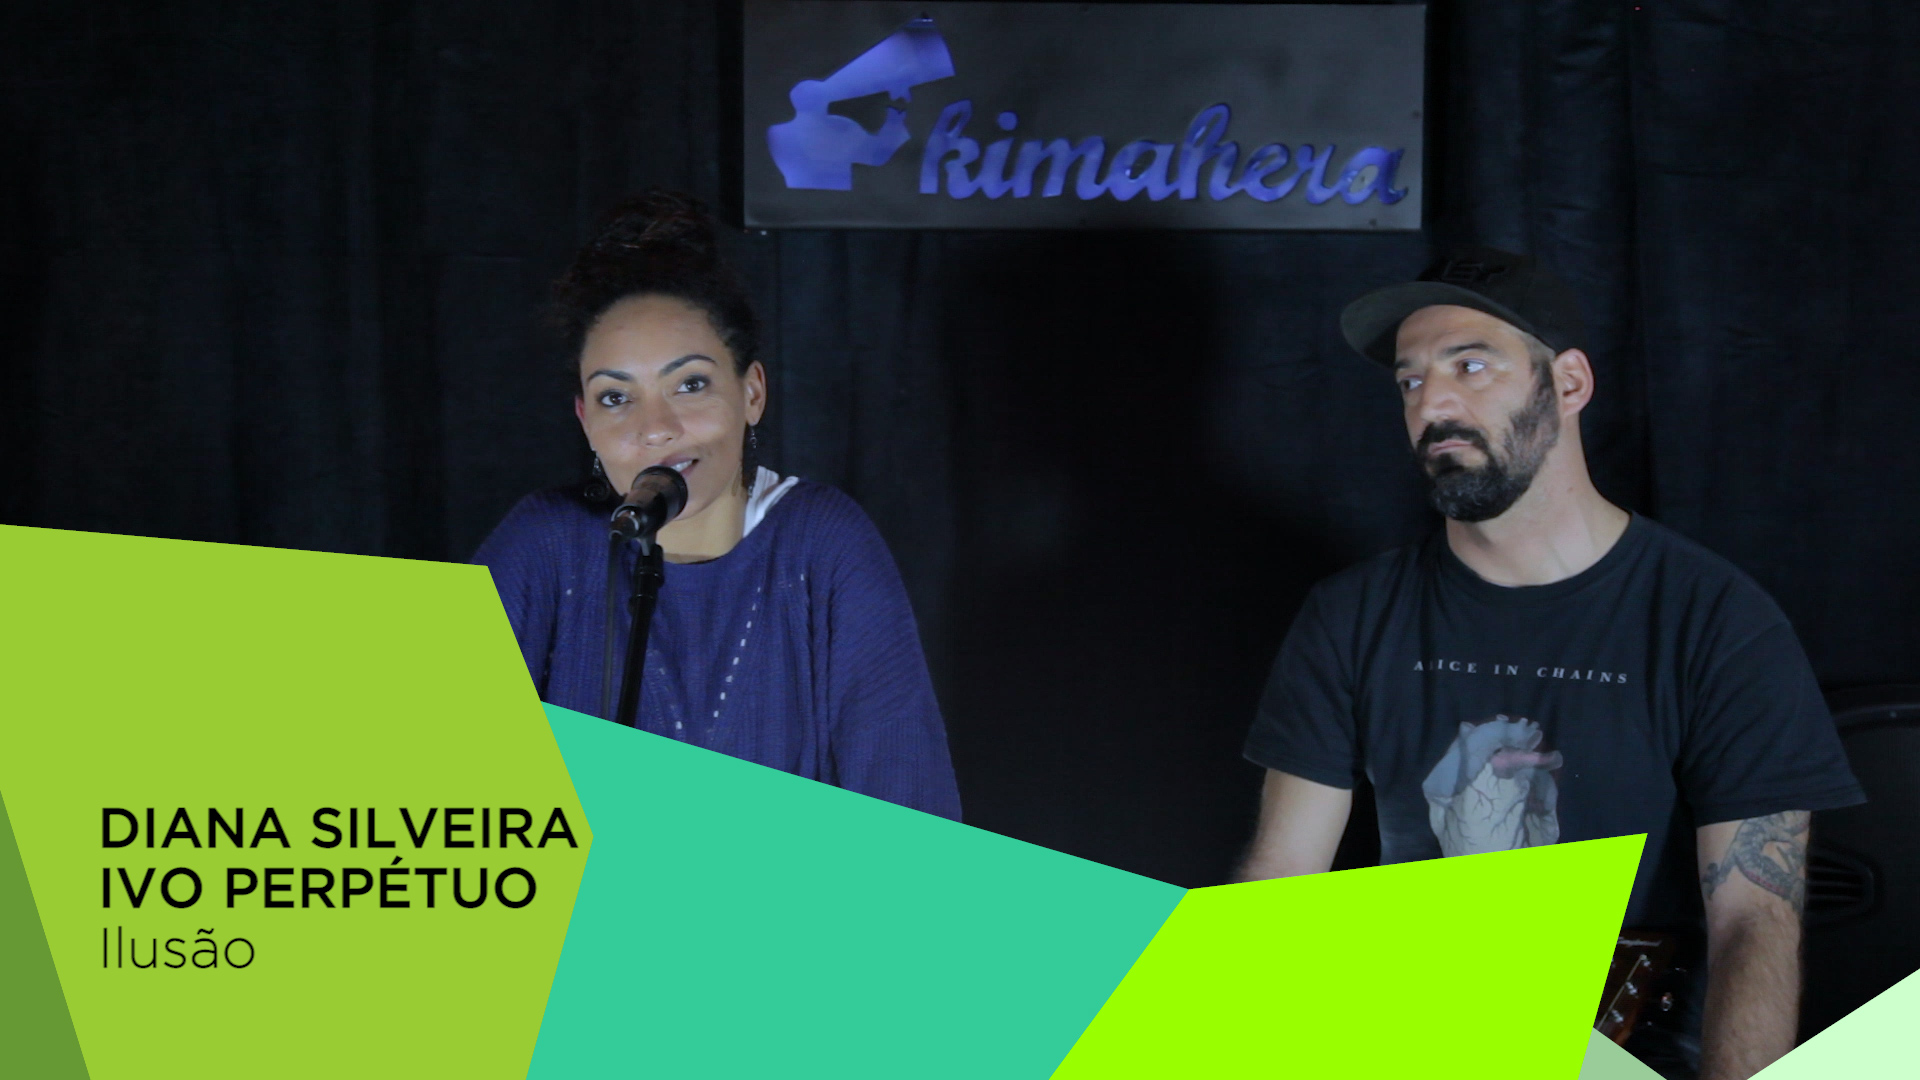 #KimaheraSections - Diana Silveira & Ivo Perpétuo - Março'18 #15